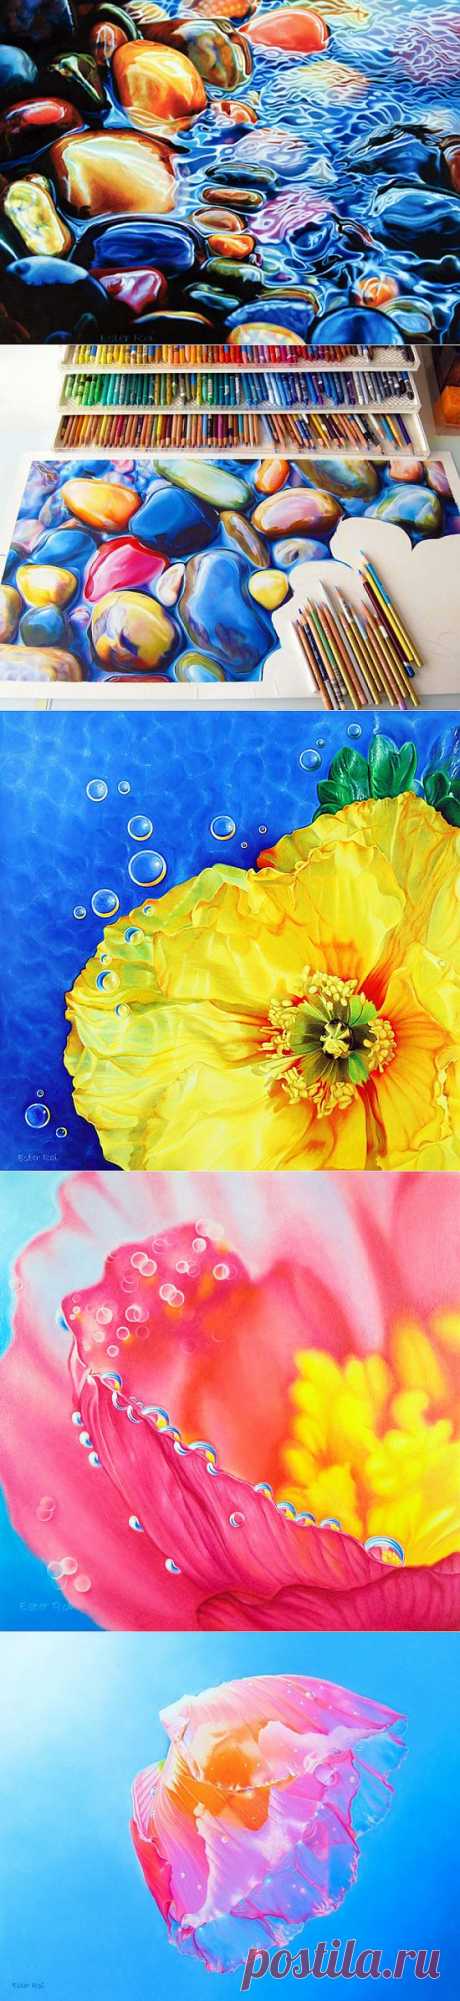 Картины, которые хочется потрогать (ФОТО). Американская художница Эстер Рой рисует при помощи цветных карандашей и воска невероятно реалистичные картины.